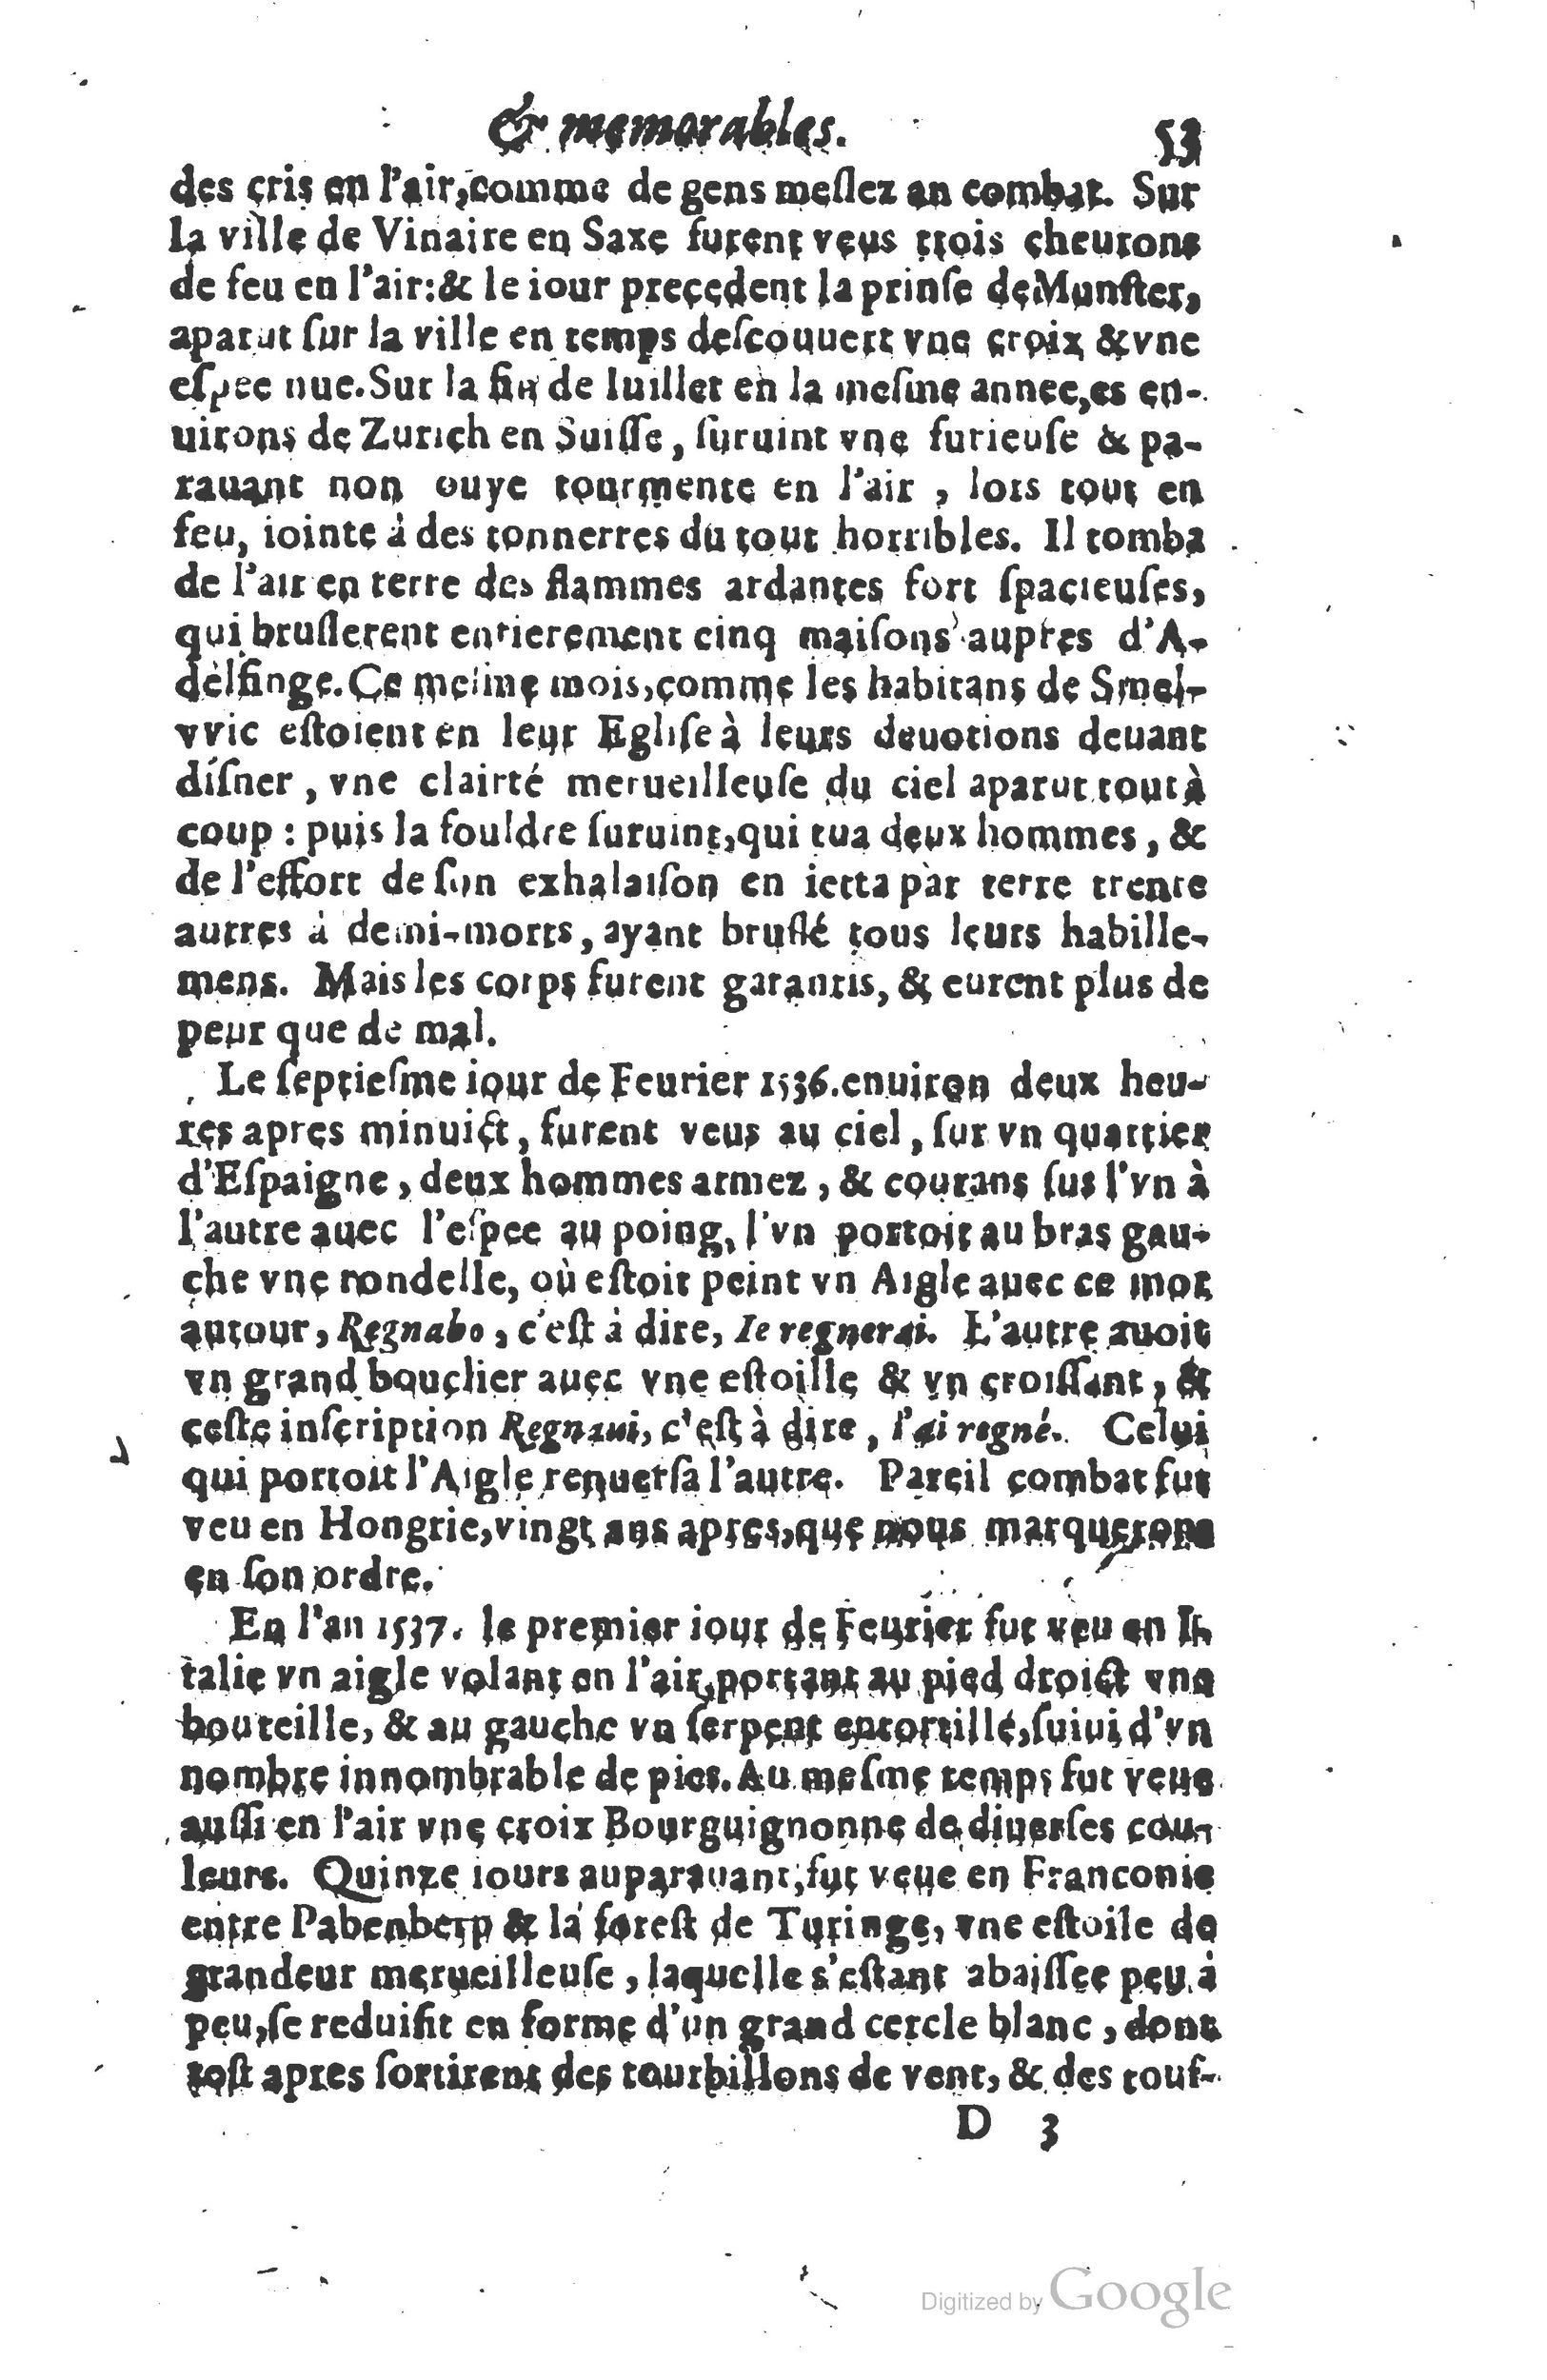 1610 Trésor d’histoires admirables et mémorables de nostre temps Marceau Princeton_Page_0074.jpg